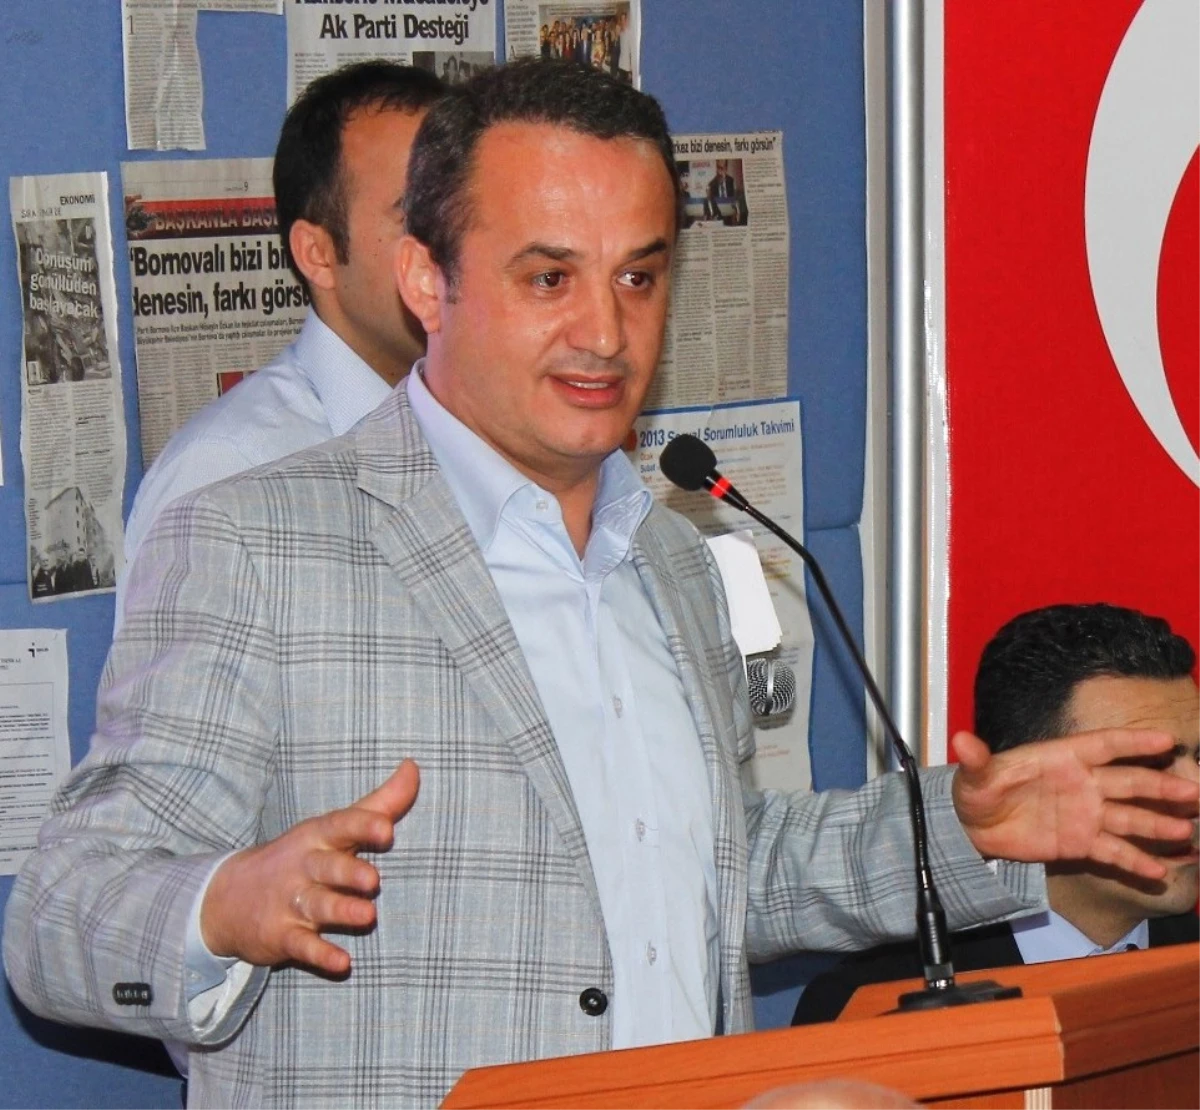 AK Parti İzmir İl Başkanı Bülent Delican, görevden Alındı